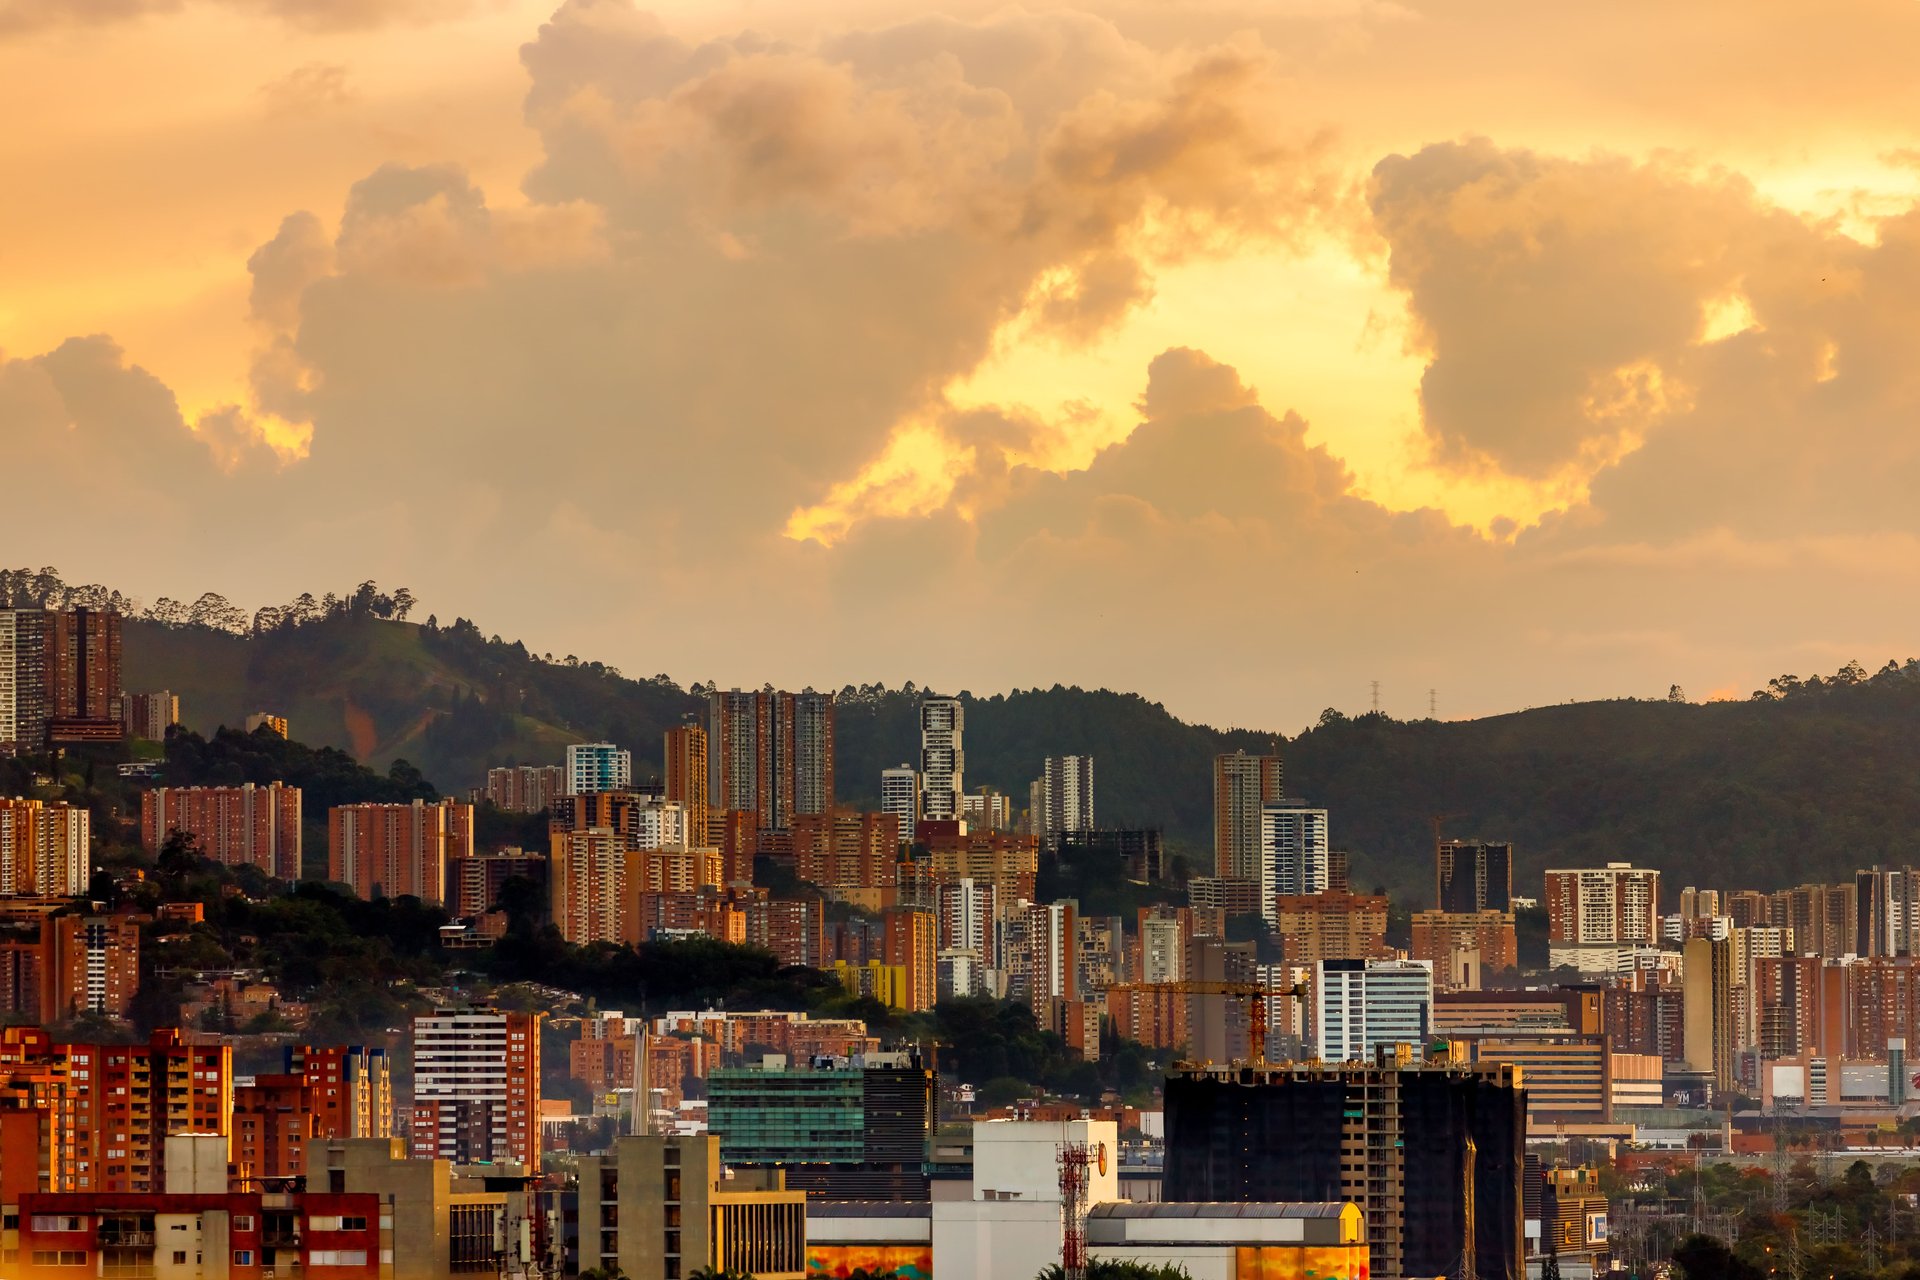 Panoramique d'immeubles sur une colline à Medellin, Colombie, au coucher du soleil